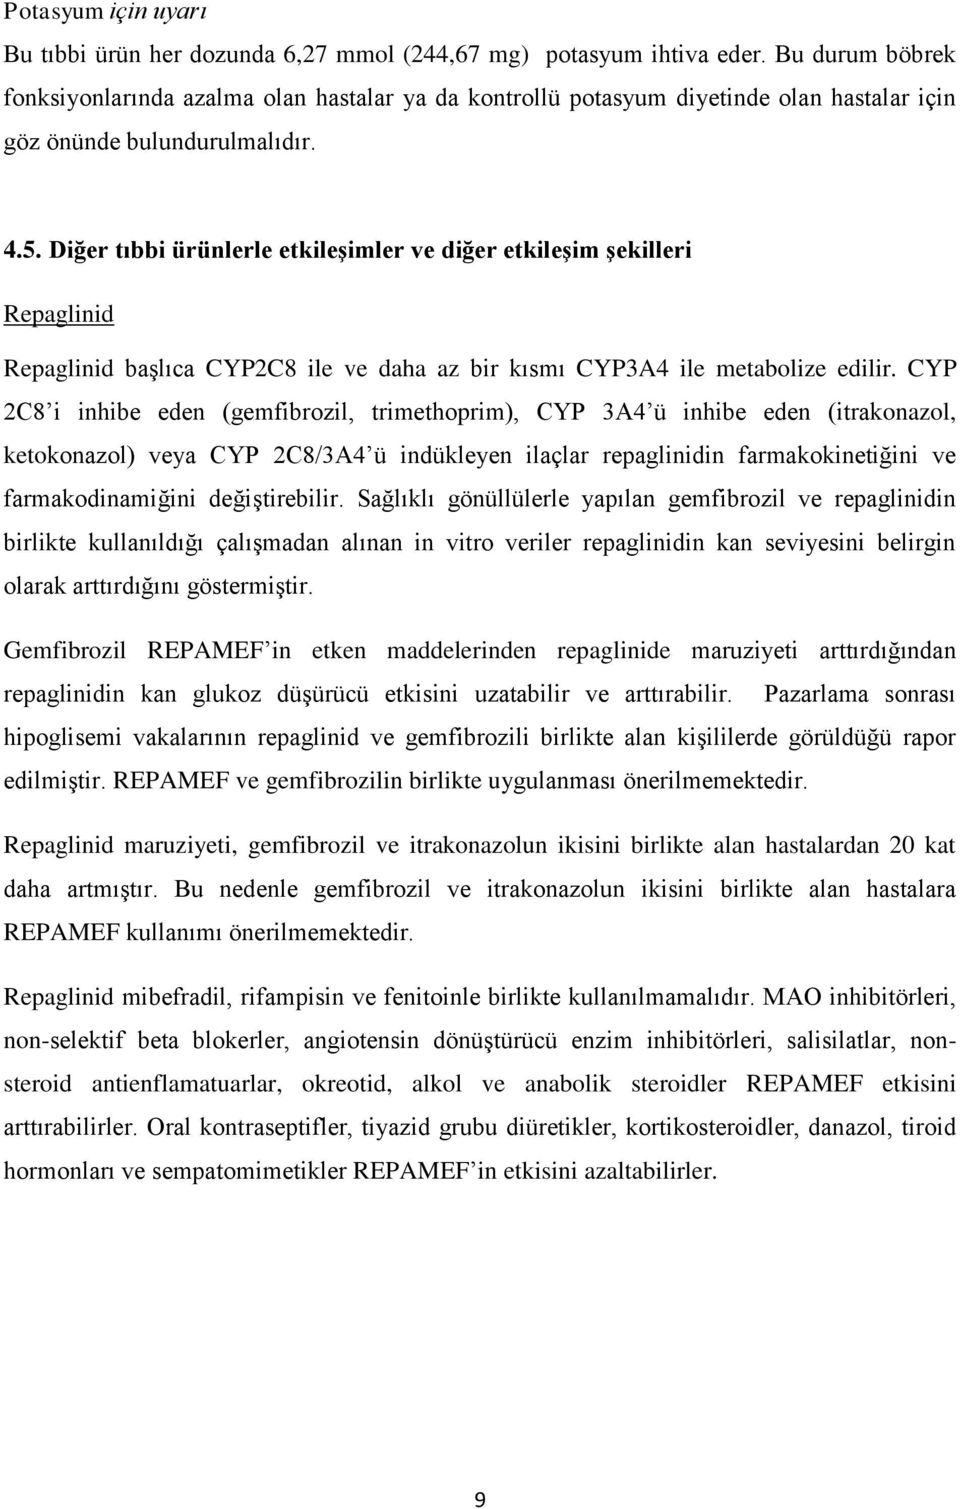 Diğer tıbbi ürünlerle etkileşimler ve diğer etkileşim şekilleri Repaglinid Repaglinid başlıca CYP2C8 ile ve daha az bir kısmı CYP3A4 ile metabolize edilir.